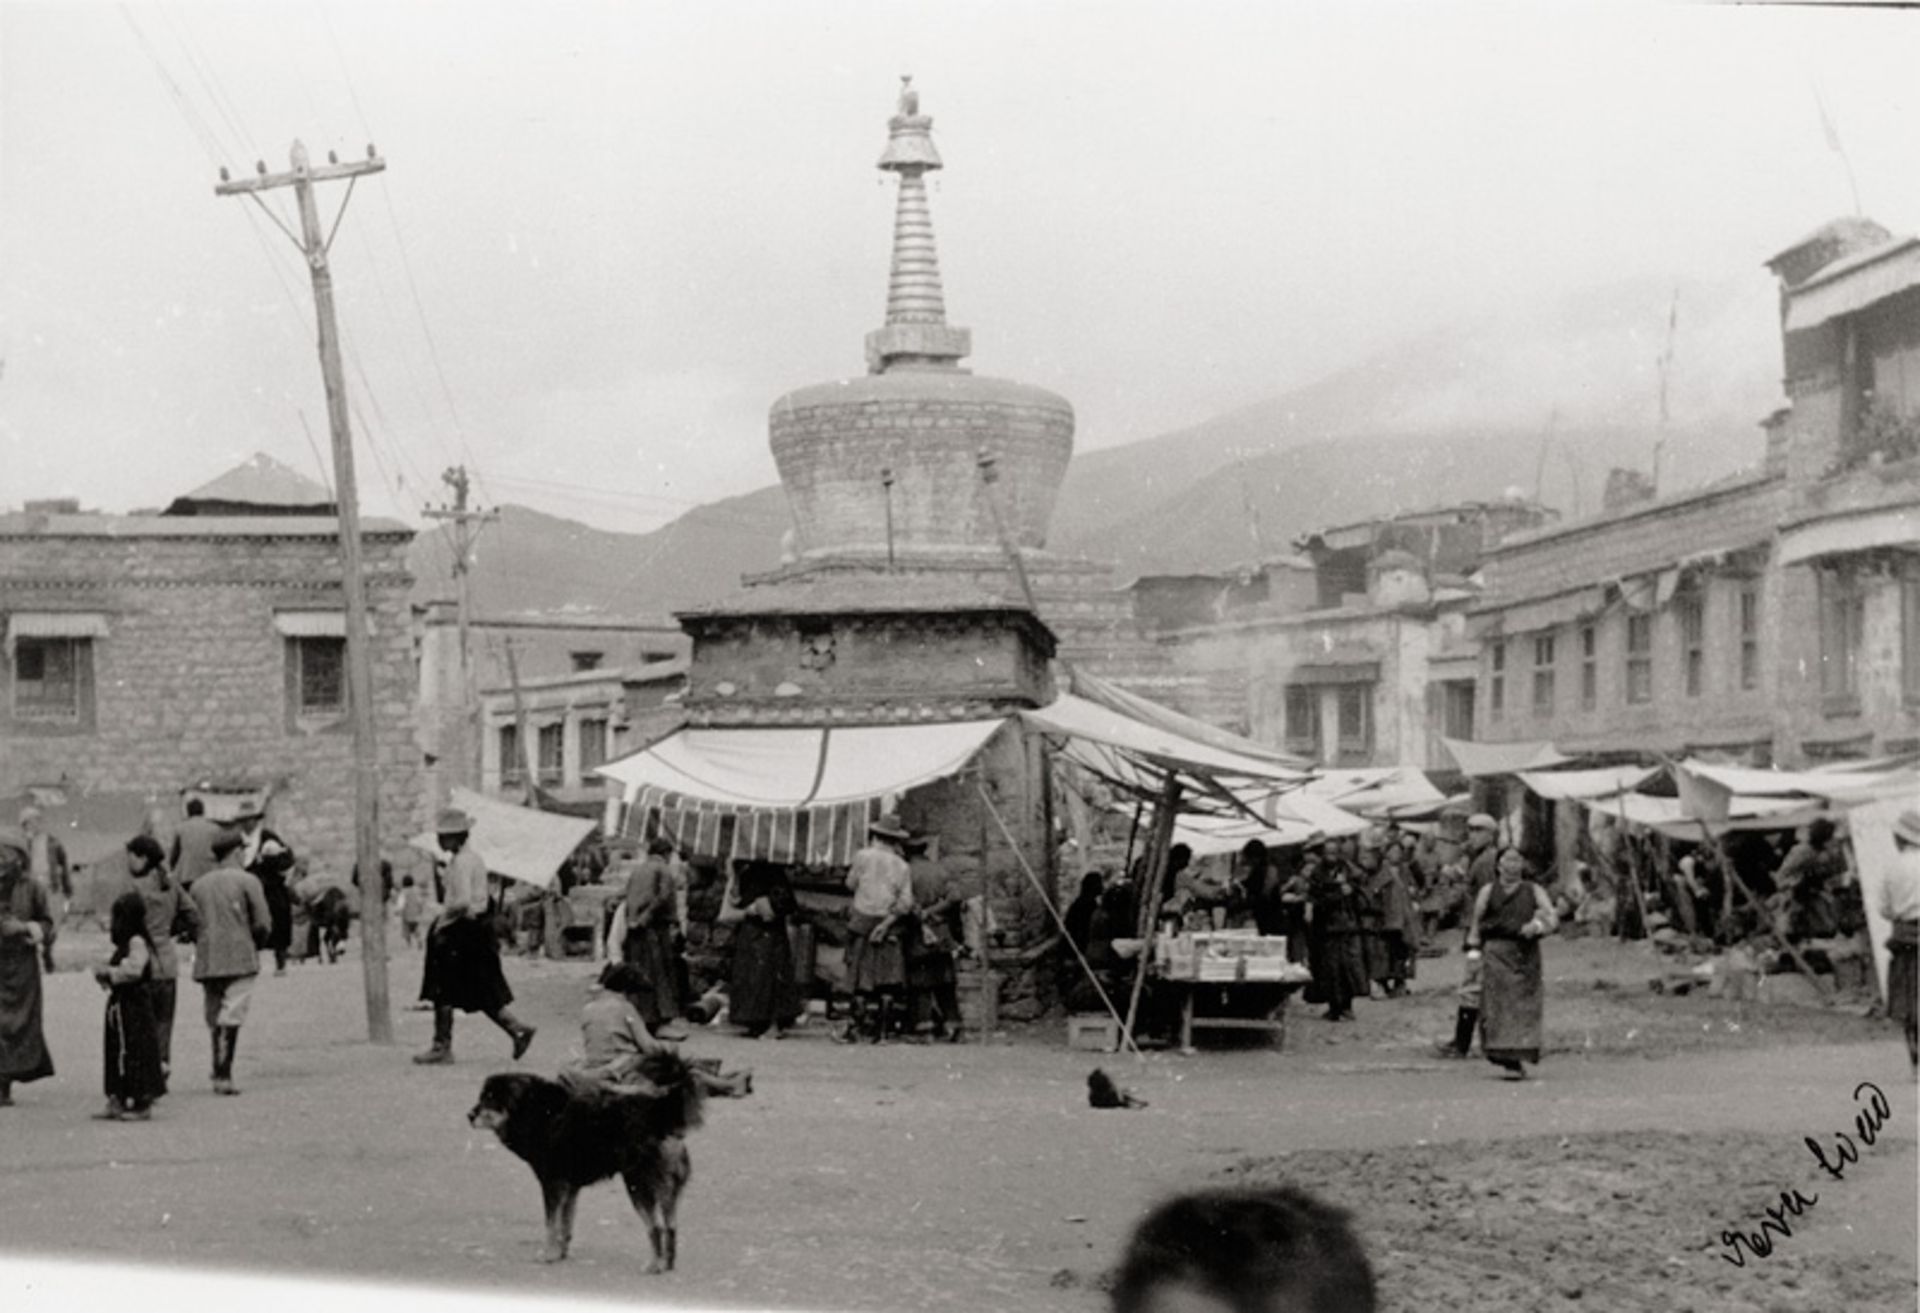 Siao, Eva: Images of Lhasa and the Potala Palace - Bild 2 aus 2